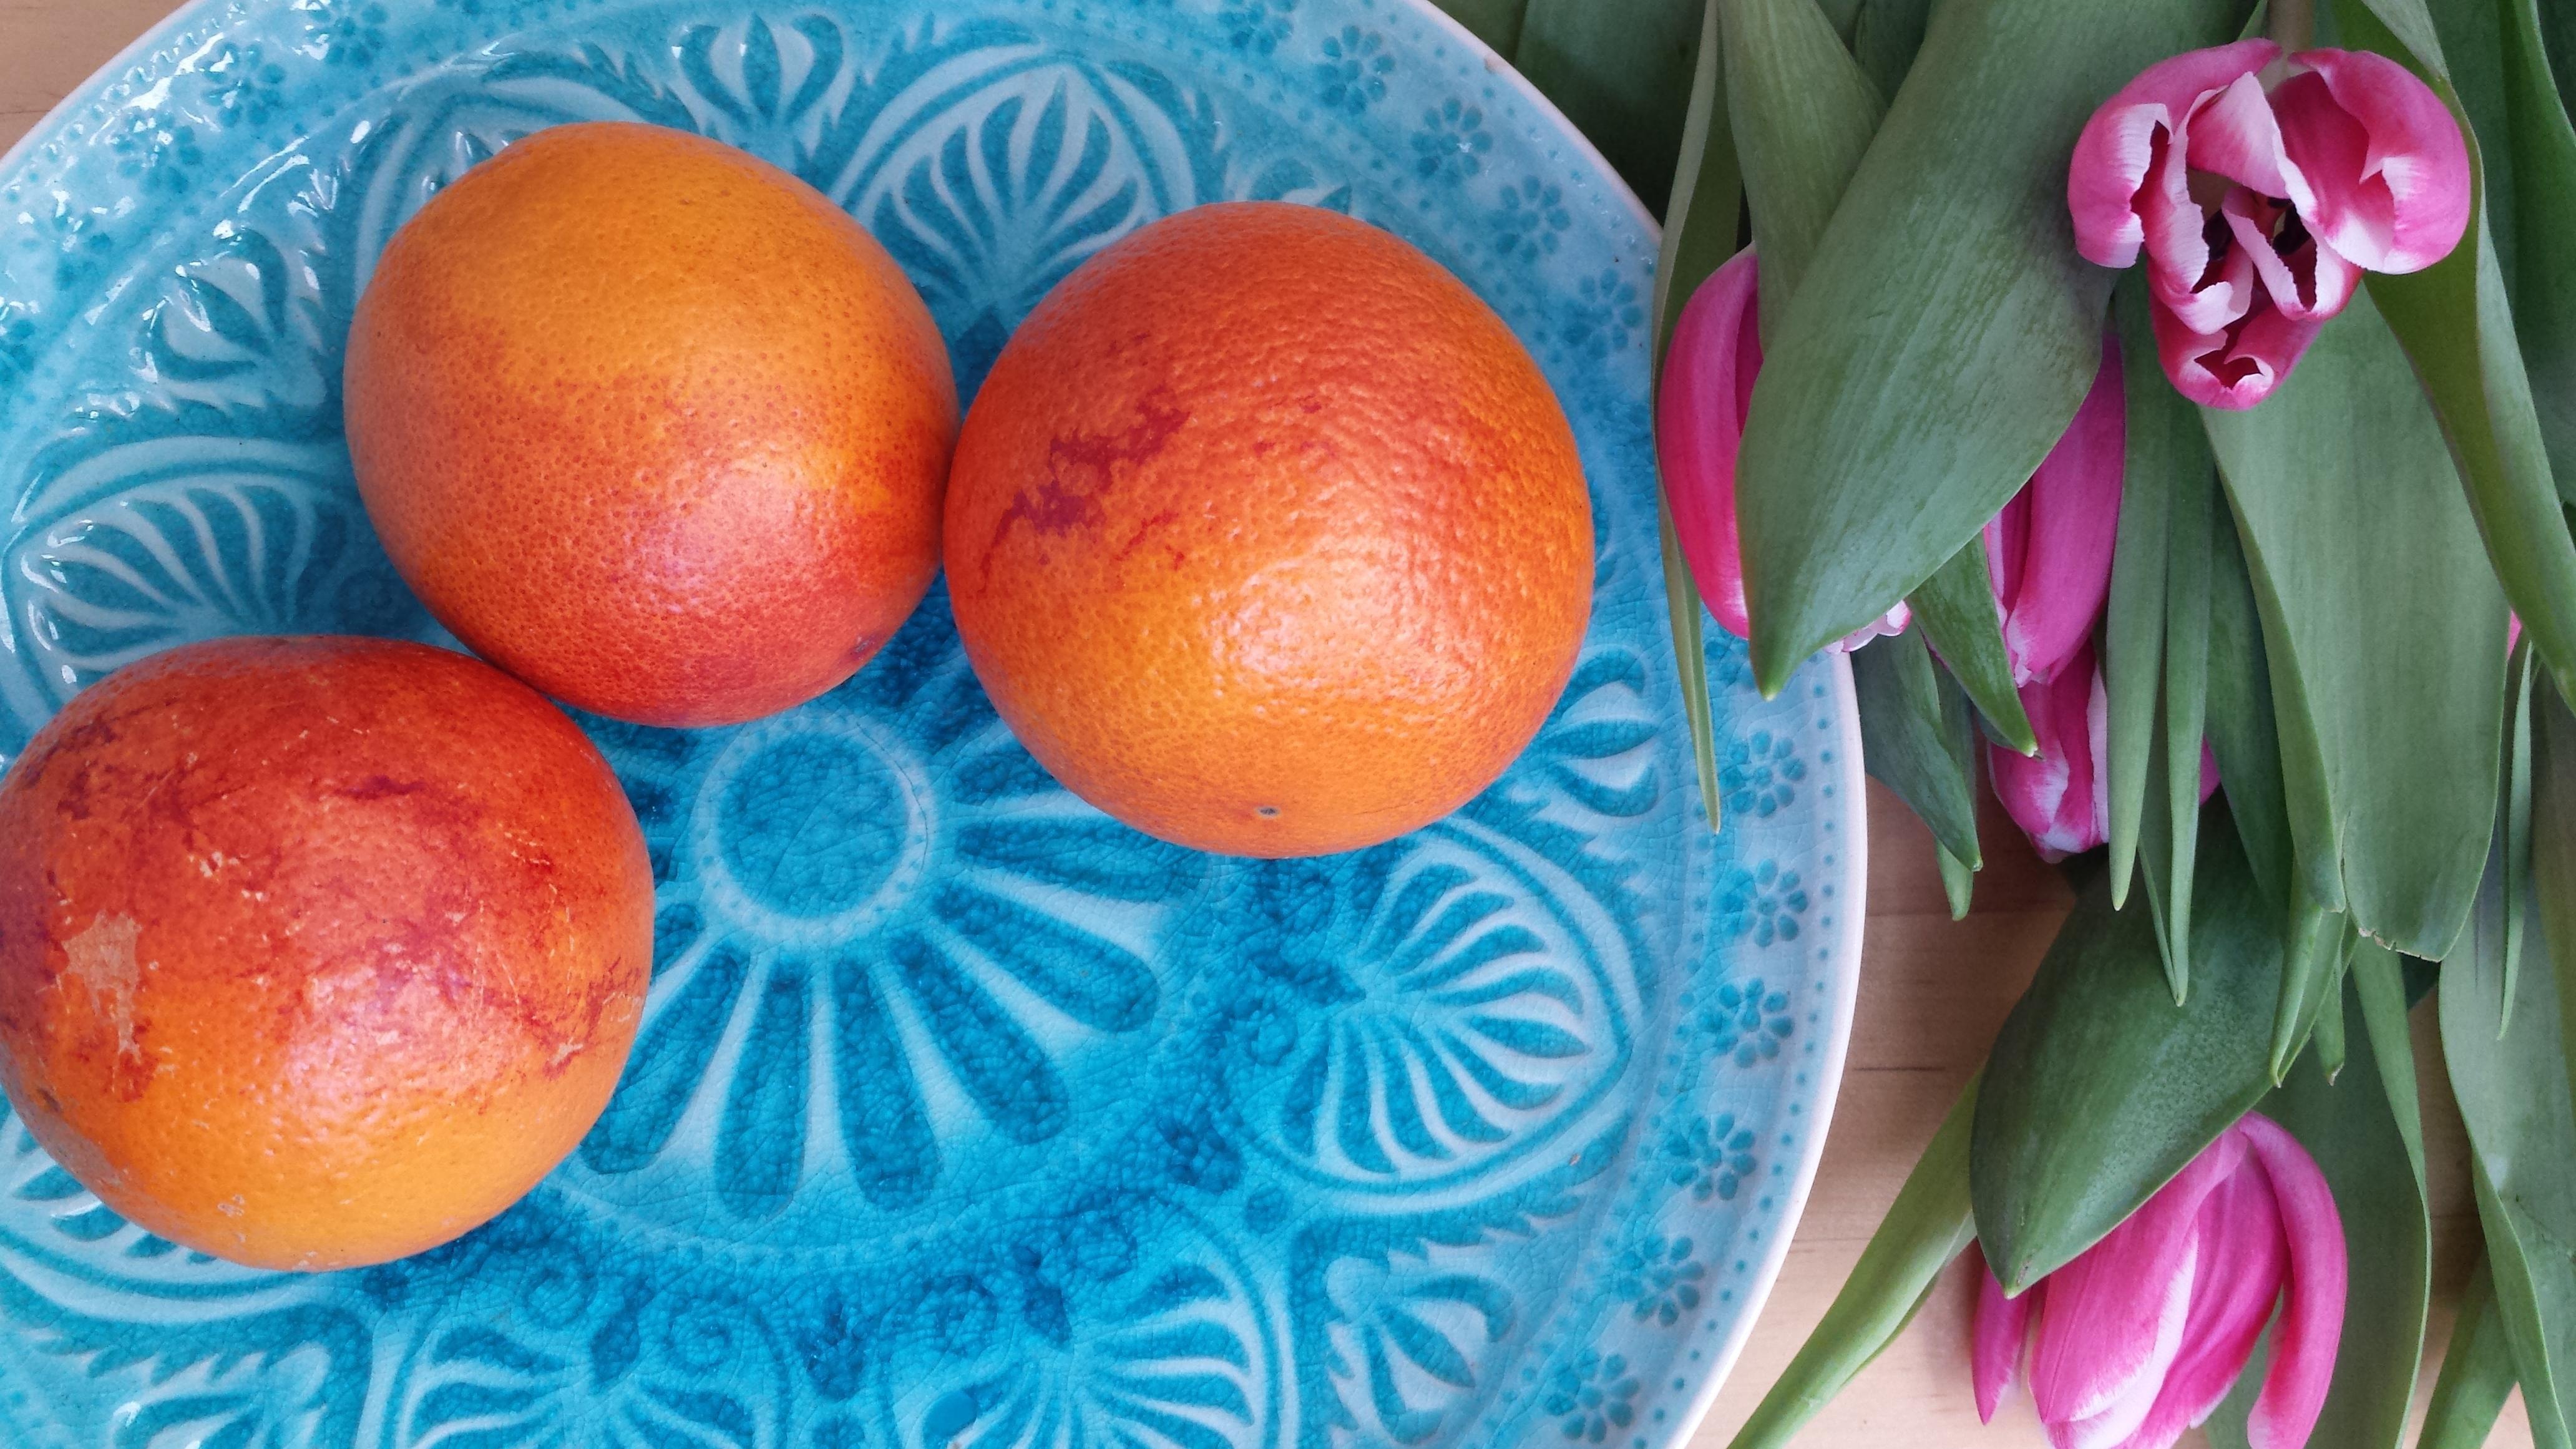 Hilft bei grauem Februarwetter: Farbrausch vom Wochenendmarkt #frühling #orangen #tulpen #blumen #Keramik